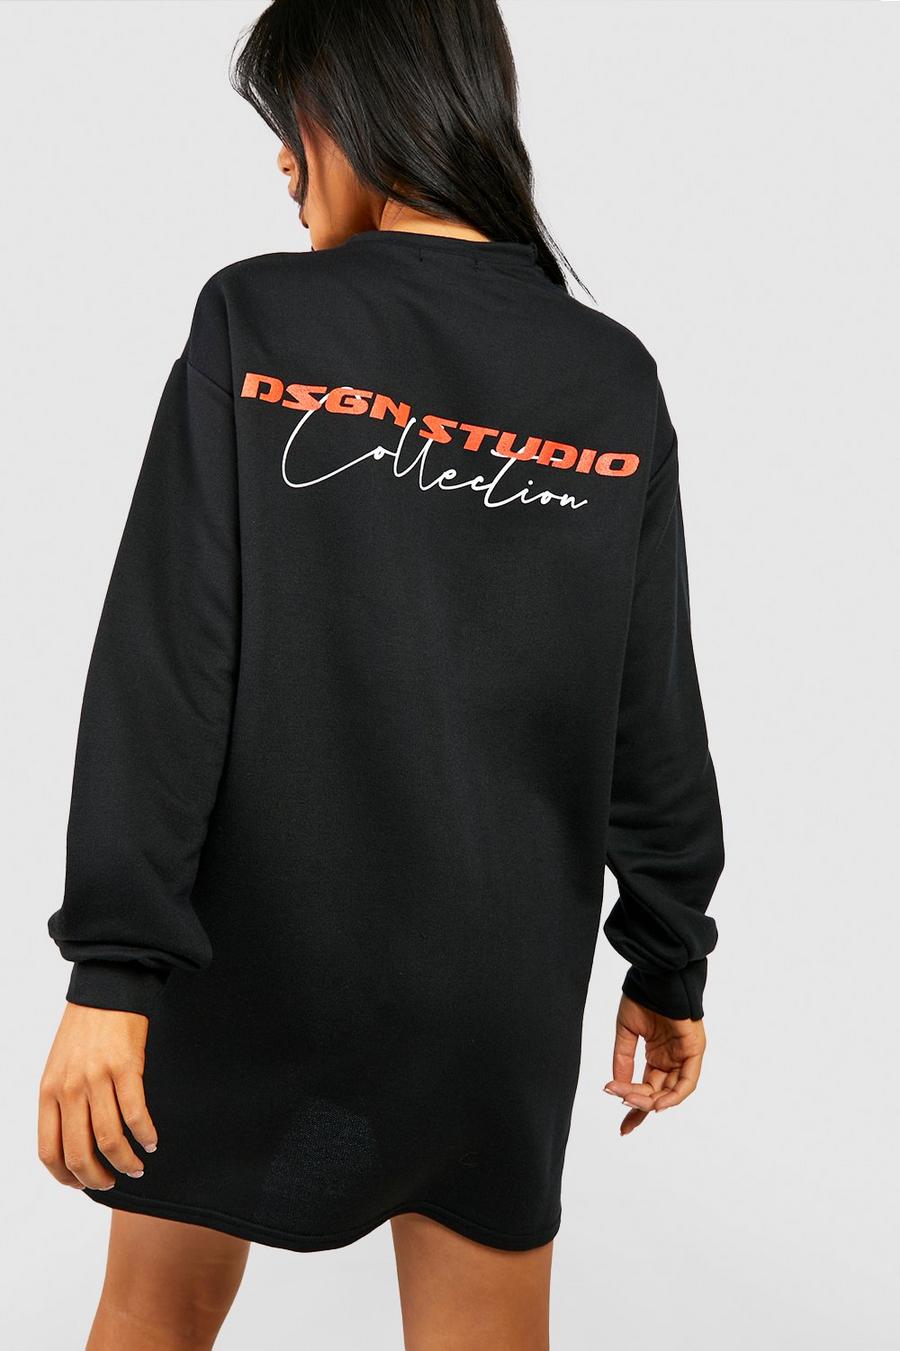 Print Oversize Sweatshirt-Kleid mit Dsgn Studio Print, Black noir